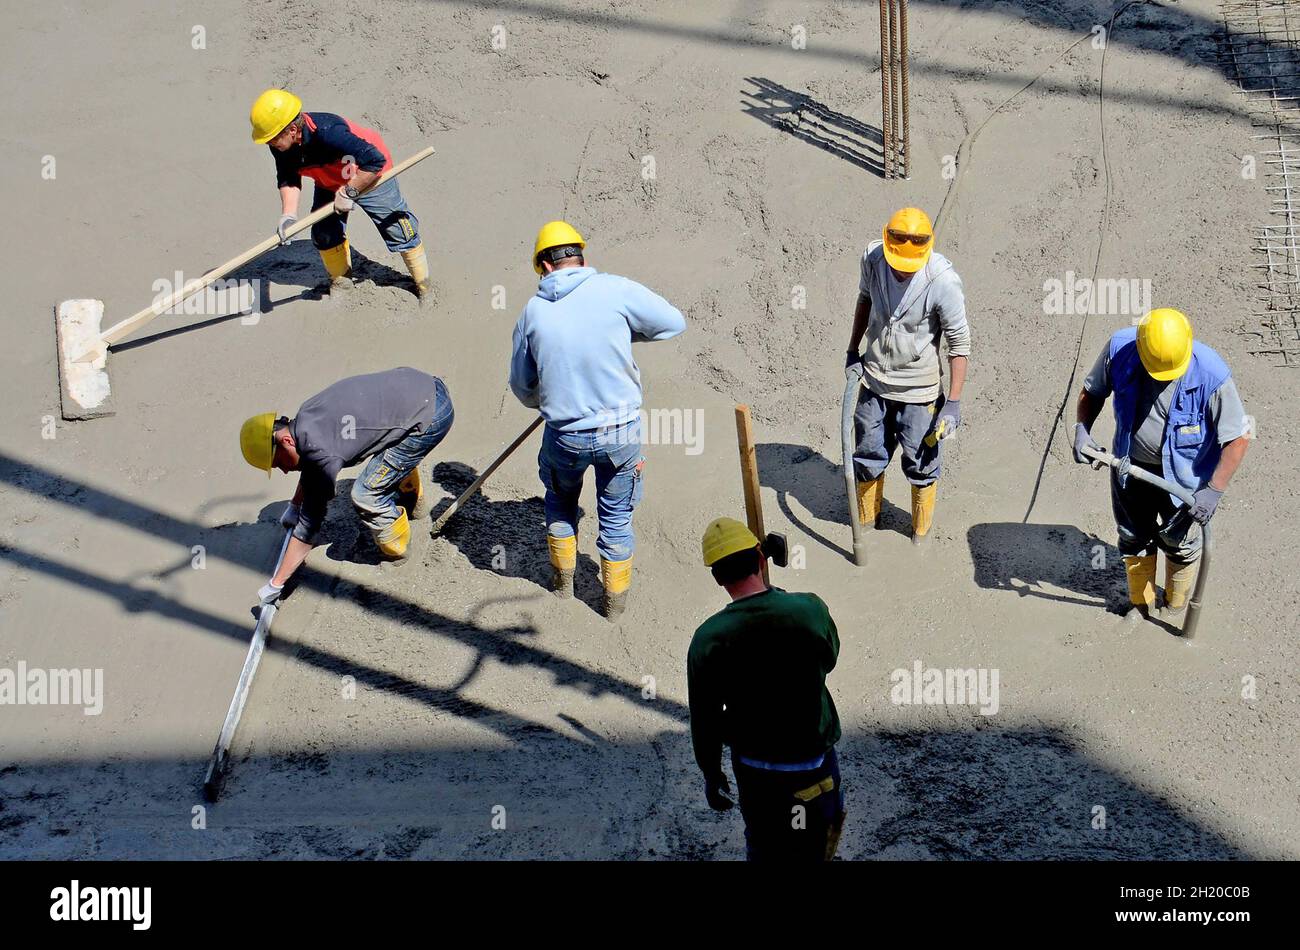 Bauarbeiter auf einer Baustelle in Österreich, Europa - Construction workers on a construction site in Austria, Europe Stock Photo